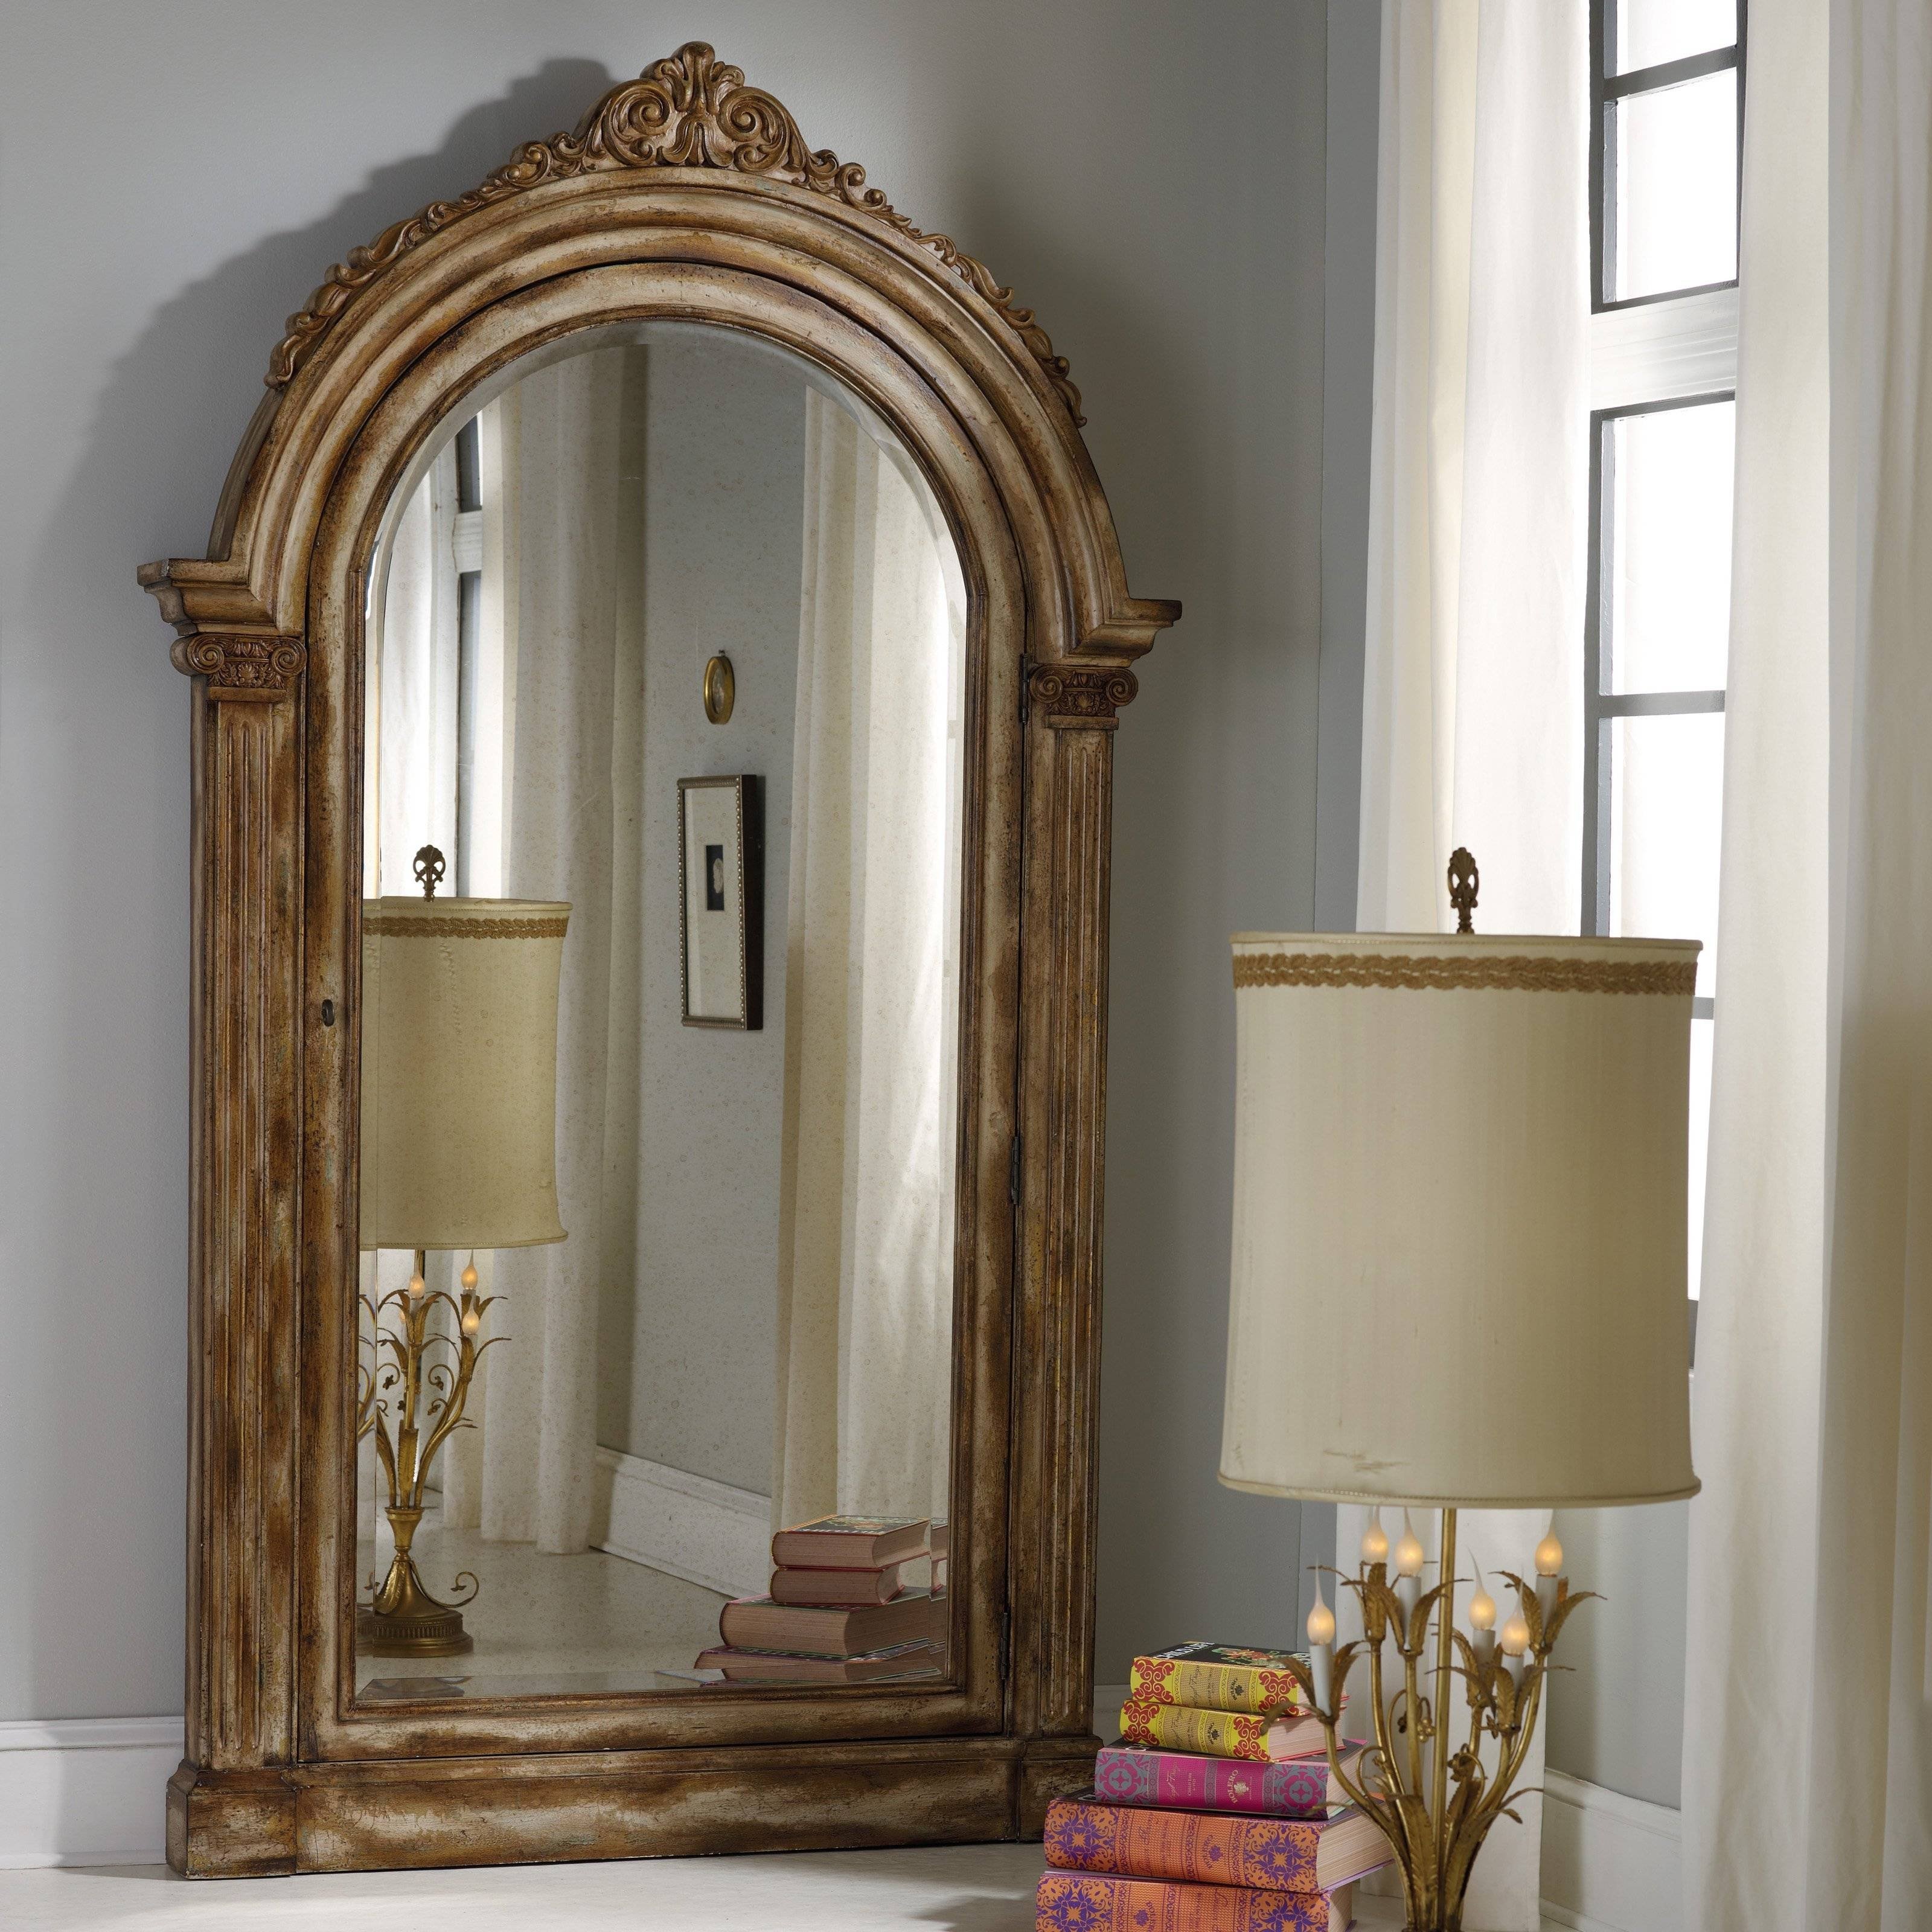 Zerkalo. Зеркало в балийском стиле. Винтажное напольное зеркало. Большие зеркала. Арочное зеркало напольное.